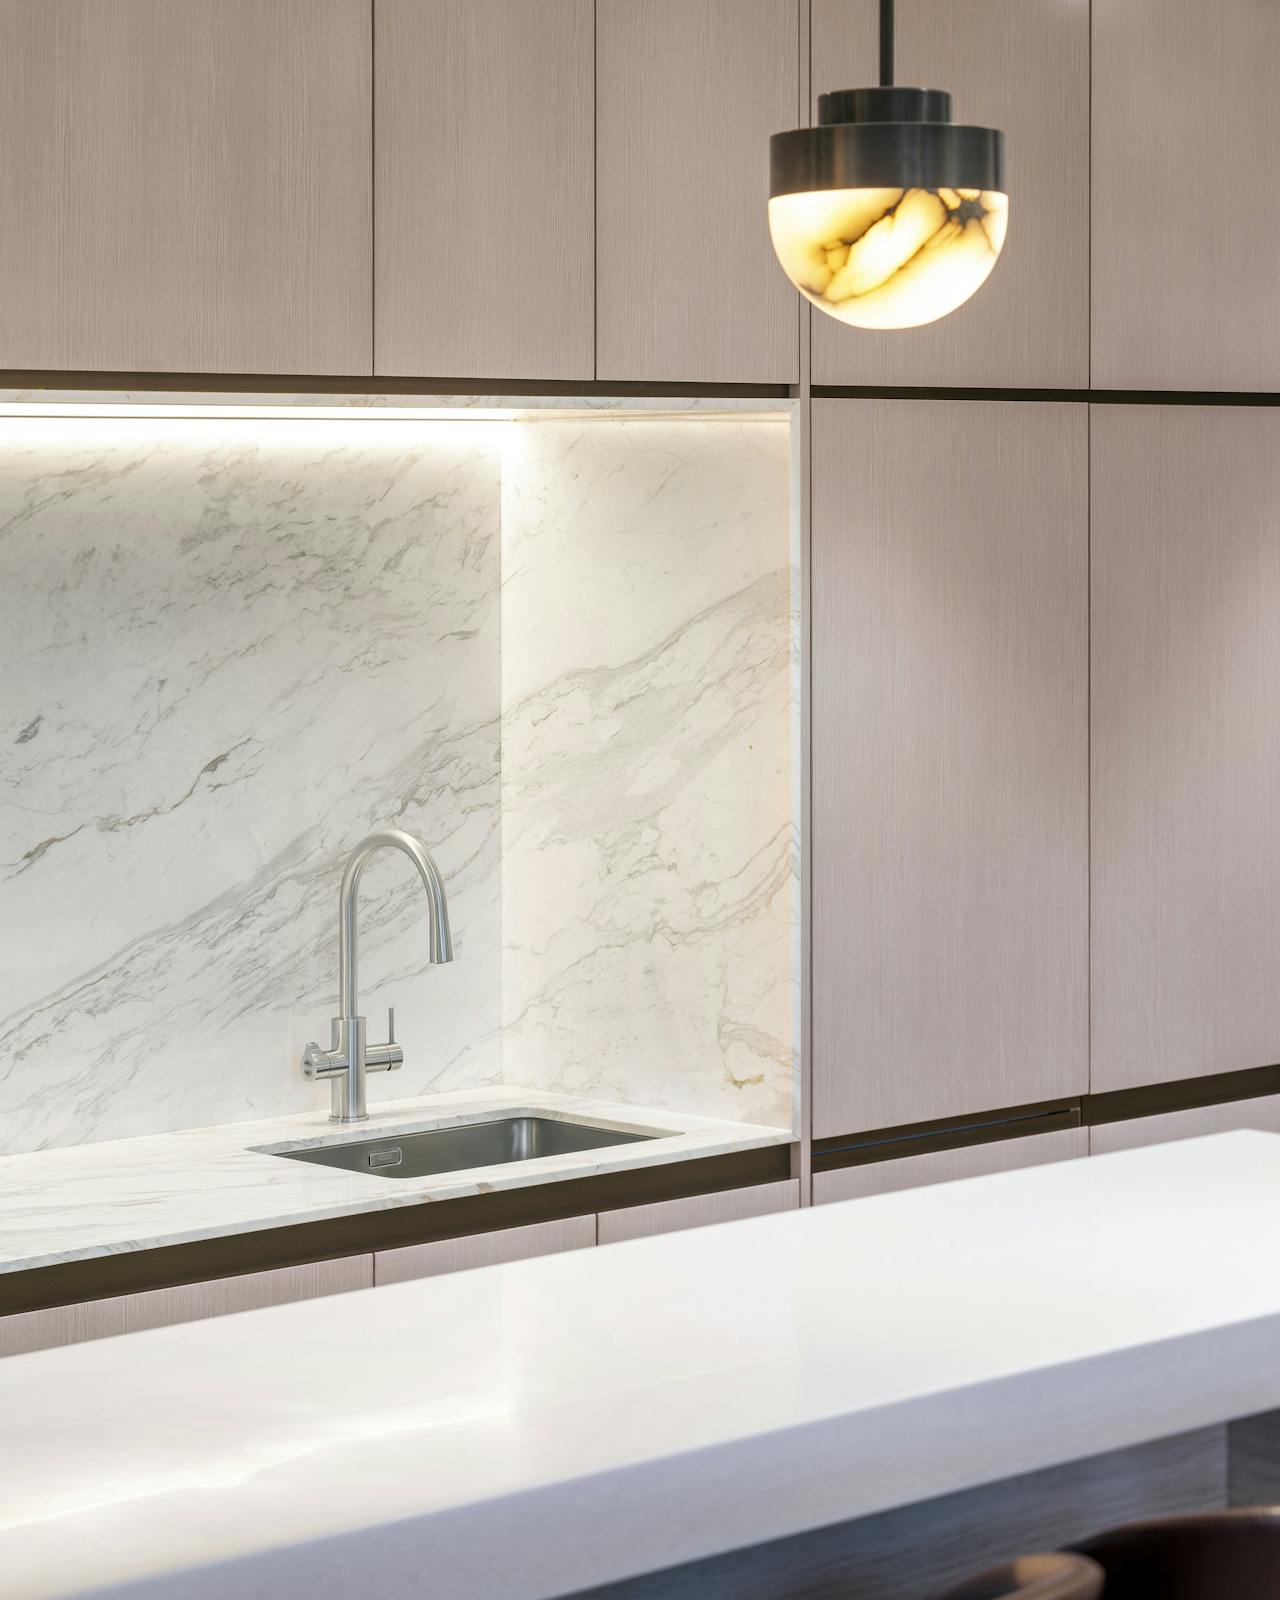 distinct office designed kitchen with sink